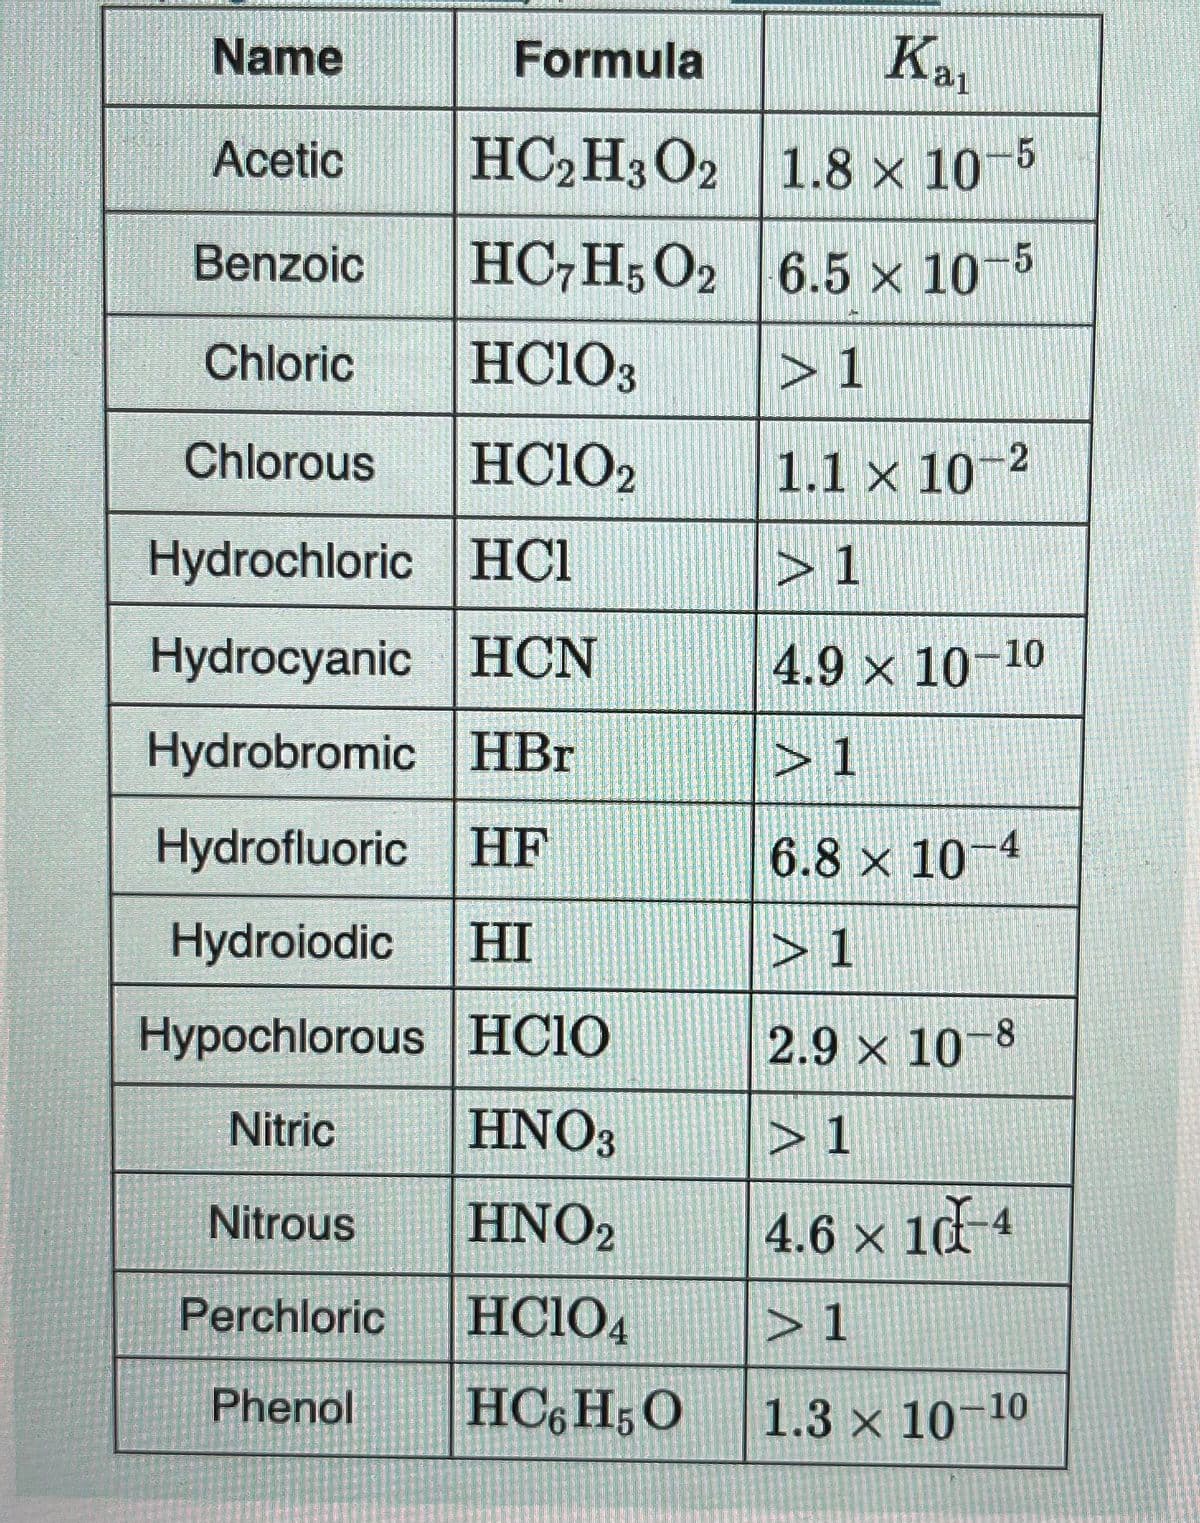 Name
Acetic
Benzoic
Chloric HClO3
Chlorous
HC1O2
Hydrochloric HC1
Hydrocyanic HCN
Hydrobromic HBr
Hydrofluoric HF
Hydroiodic HI
Hypochlorous HCIO
Nitric
HNO3
Nitrous
HNO2
Perchloric
HCIO4
Phenol
HC6H5 O
Formula
HC2H3 O2
HC7H5O2
Kat
1.8 x 10-5
6.5 × 10-5
> 1
1.1 x 10-2
>1
4.9 × 10-10
> 1
-4
6.8 x 10-4
2.9 × 10-8
> 1
4.6 × 10 -4
X
>1
1.3 × 10-10